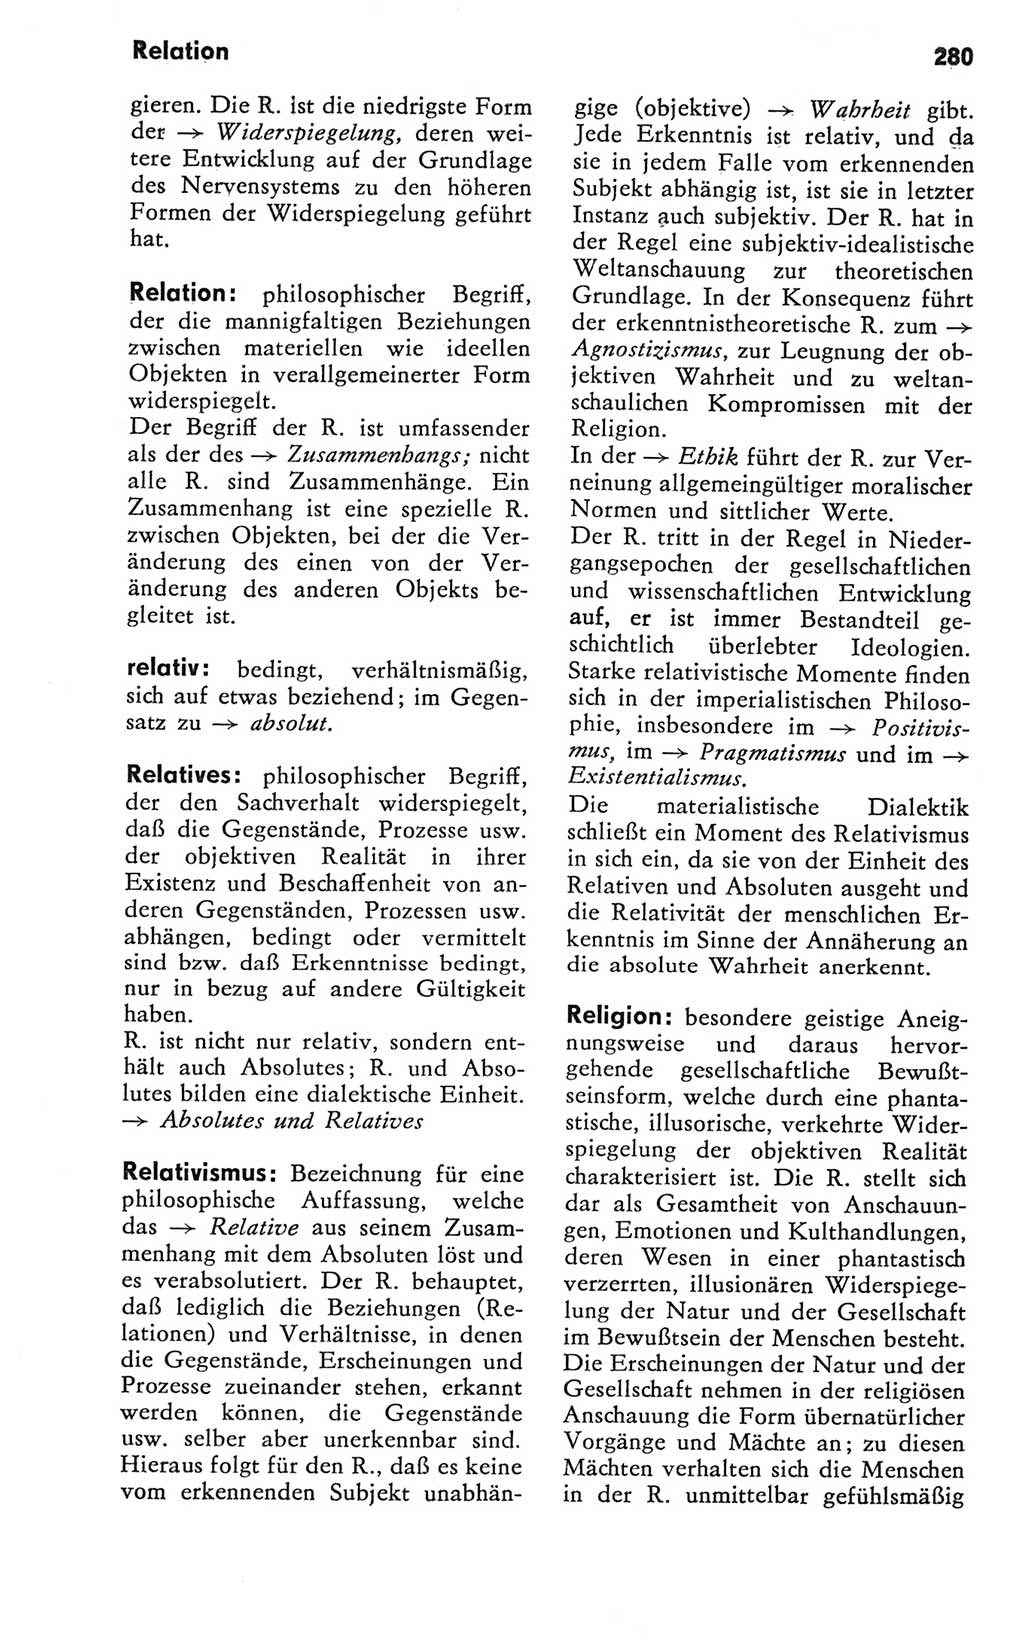 Kleines Wörterbuch der marxistisch-leninistischen Philosophie [Deutsche Demokratische Republik (DDR)] 1981, Seite 280 (Kl. Wb. ML Phil. DDR 1981, S. 280)